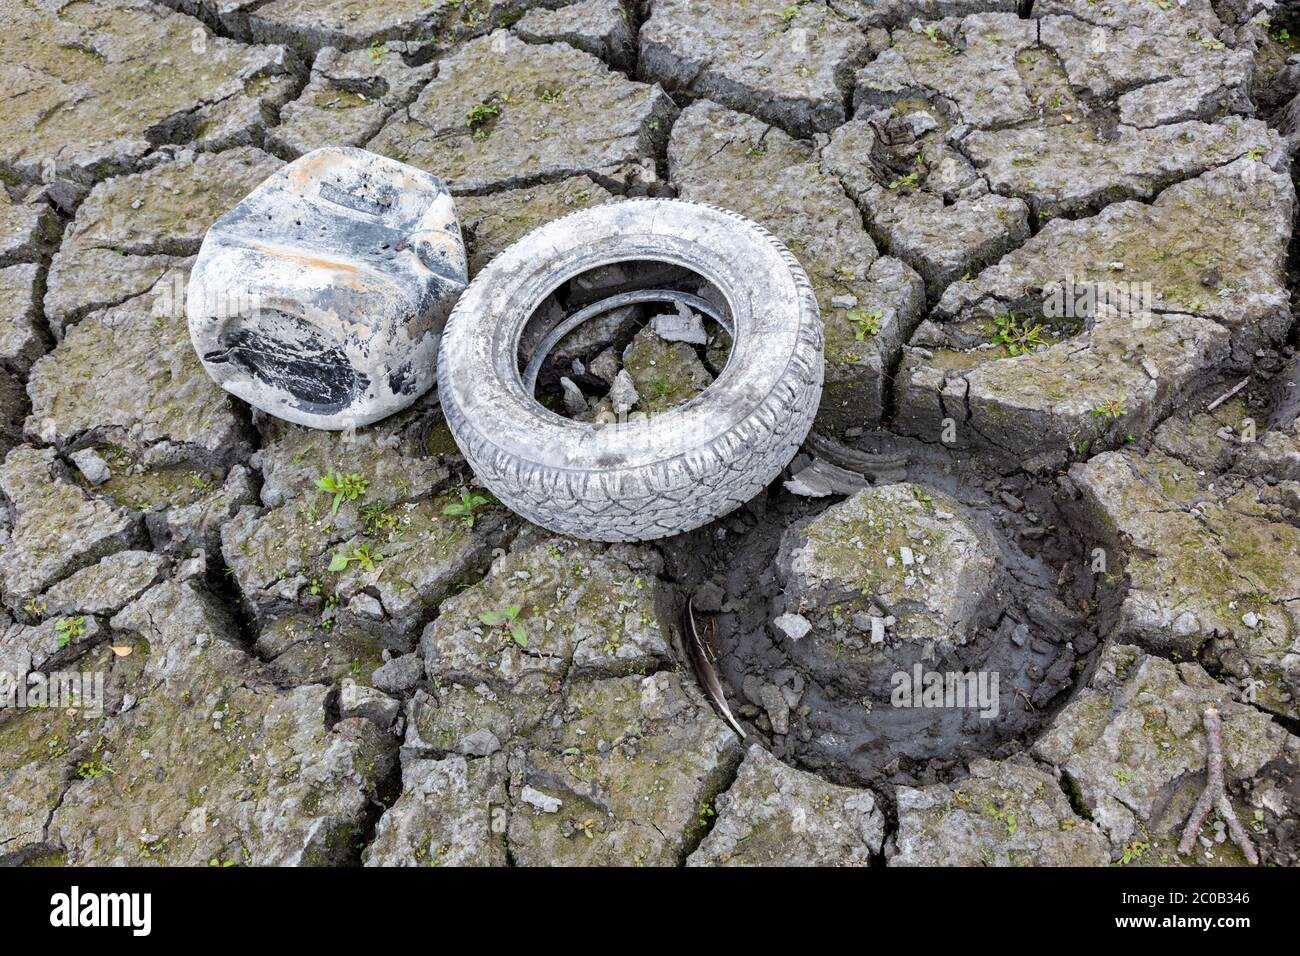 Vieux pneu, caisse de réservoir sèche par temps chaud, Royaume-Uni 2020 Banque D'Images